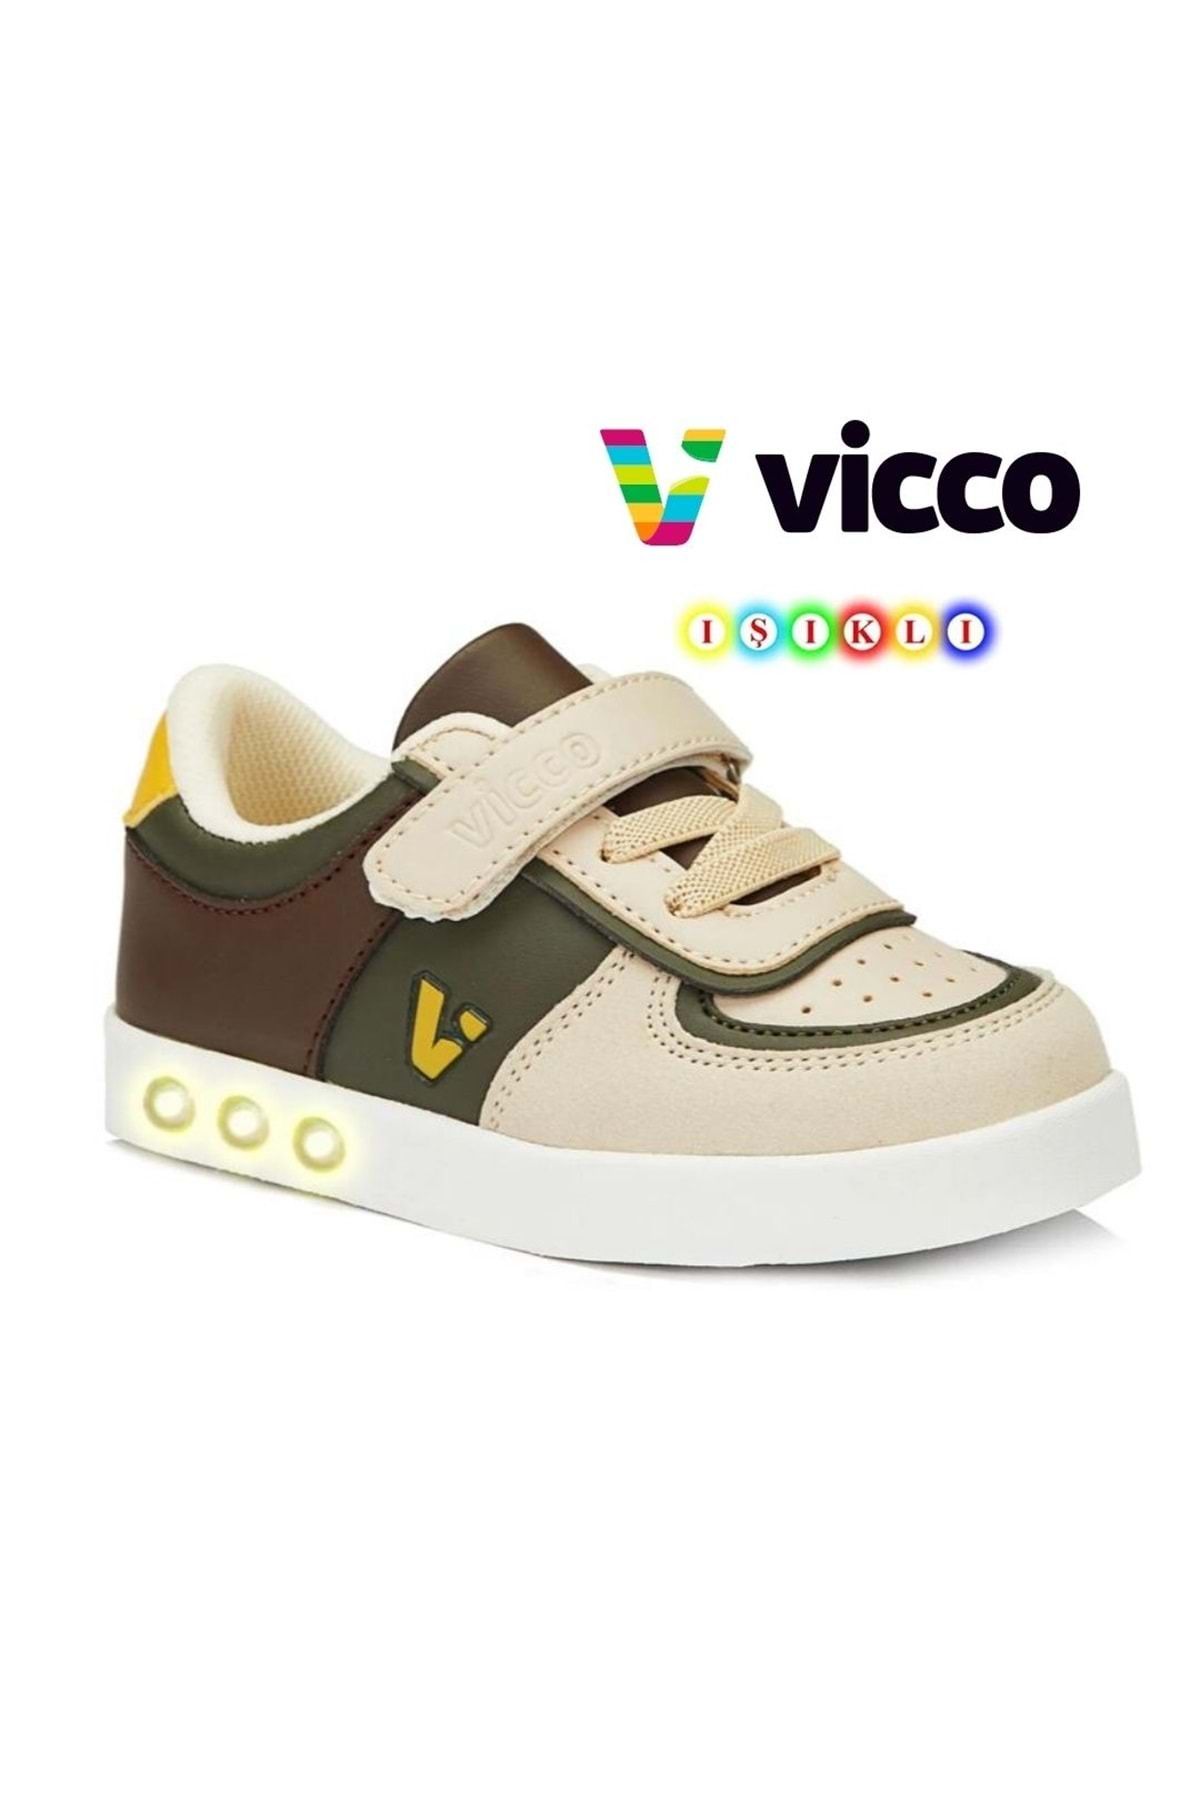 Vicco Sam Işıklı Ortopedik Çocuk Spor Ayakkabı Haki